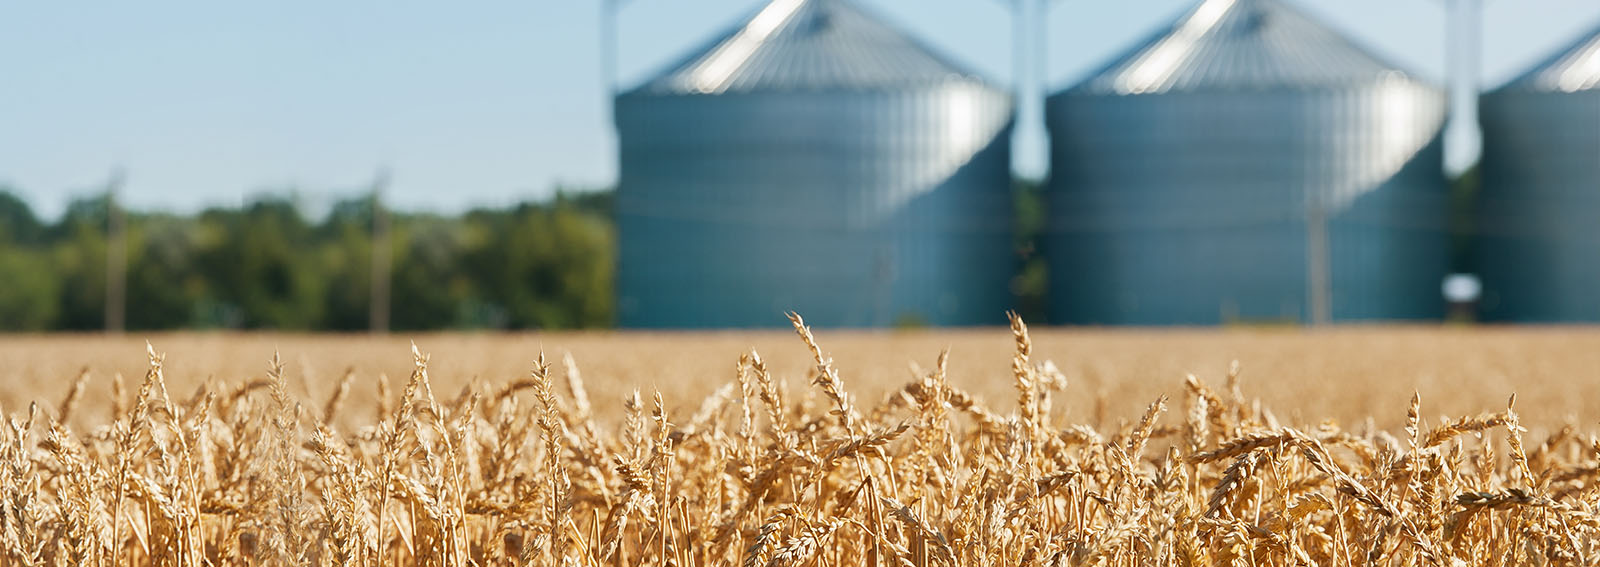 grain silos in a prairie wheat field